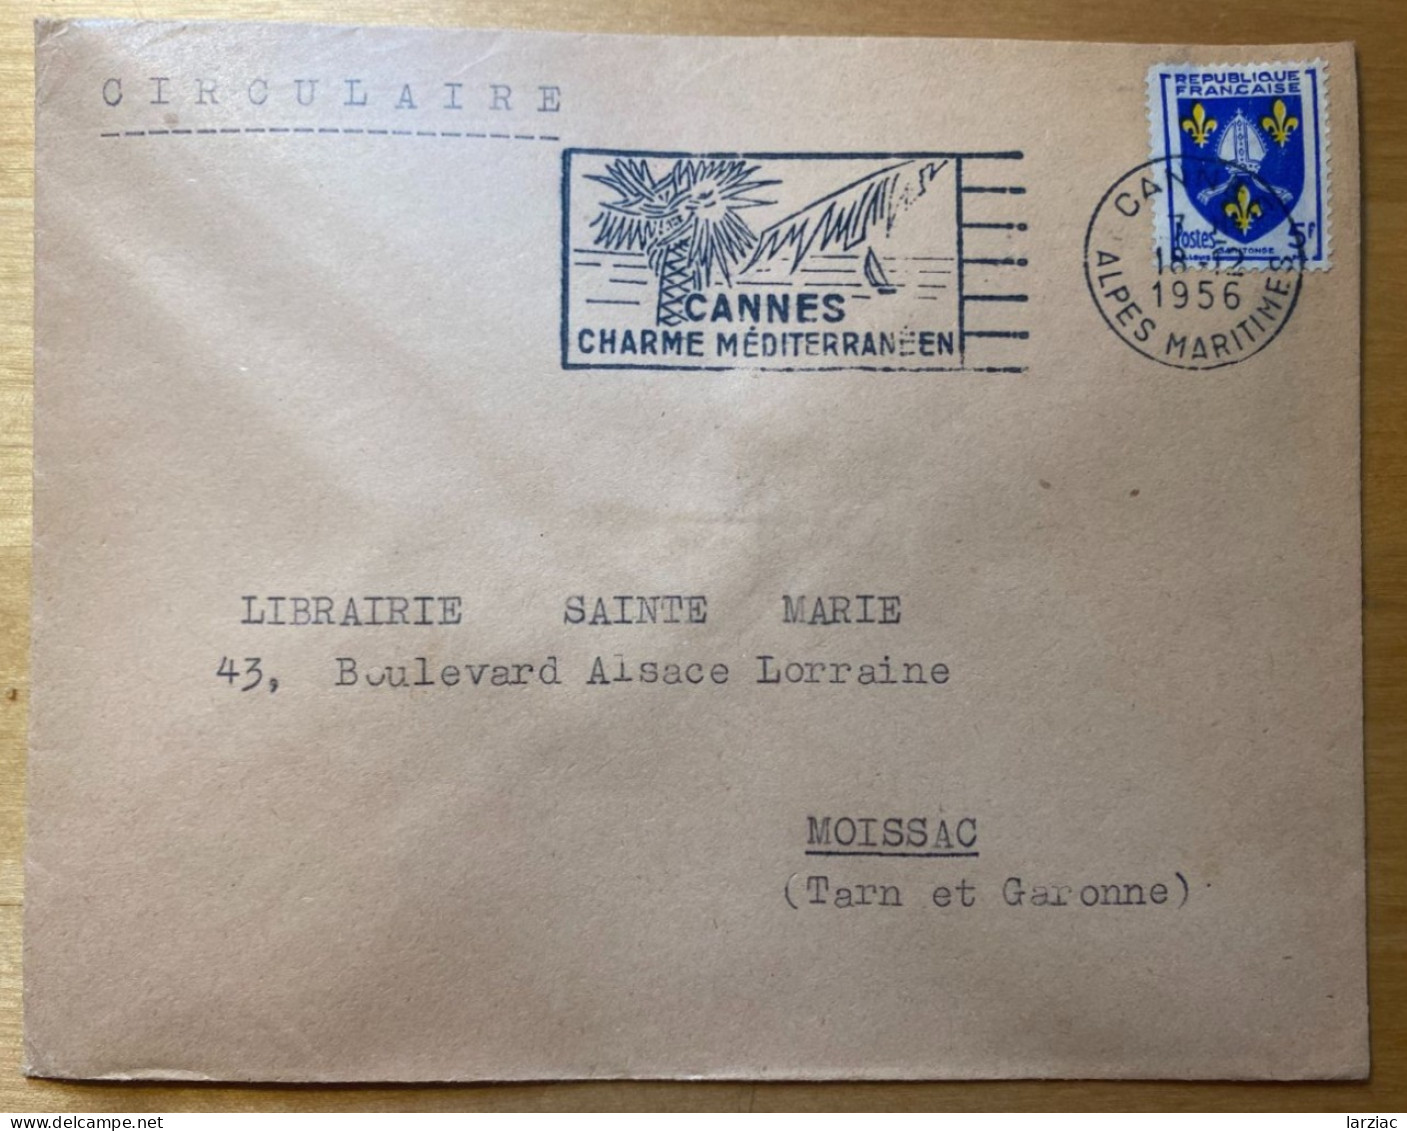 Enveloppe Affranchie Blason Saintonge Oblitération Flamme Cannes Alpes Maritimes 1956 Tarif Circulaire - Posttarife